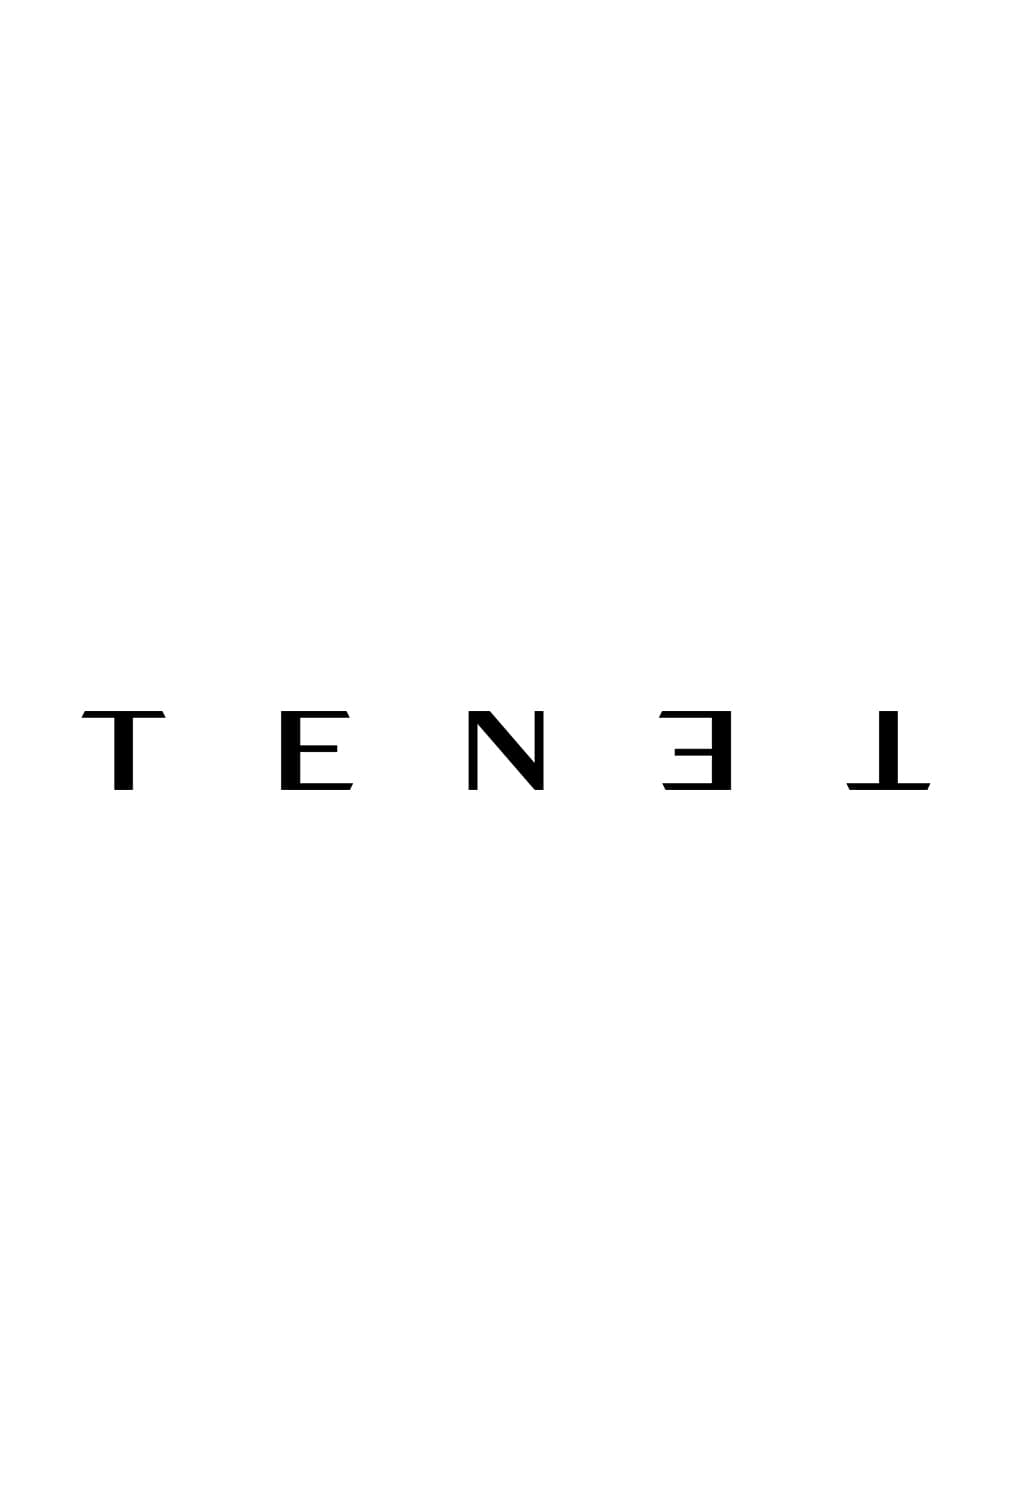 Poster de la película "Tenet"